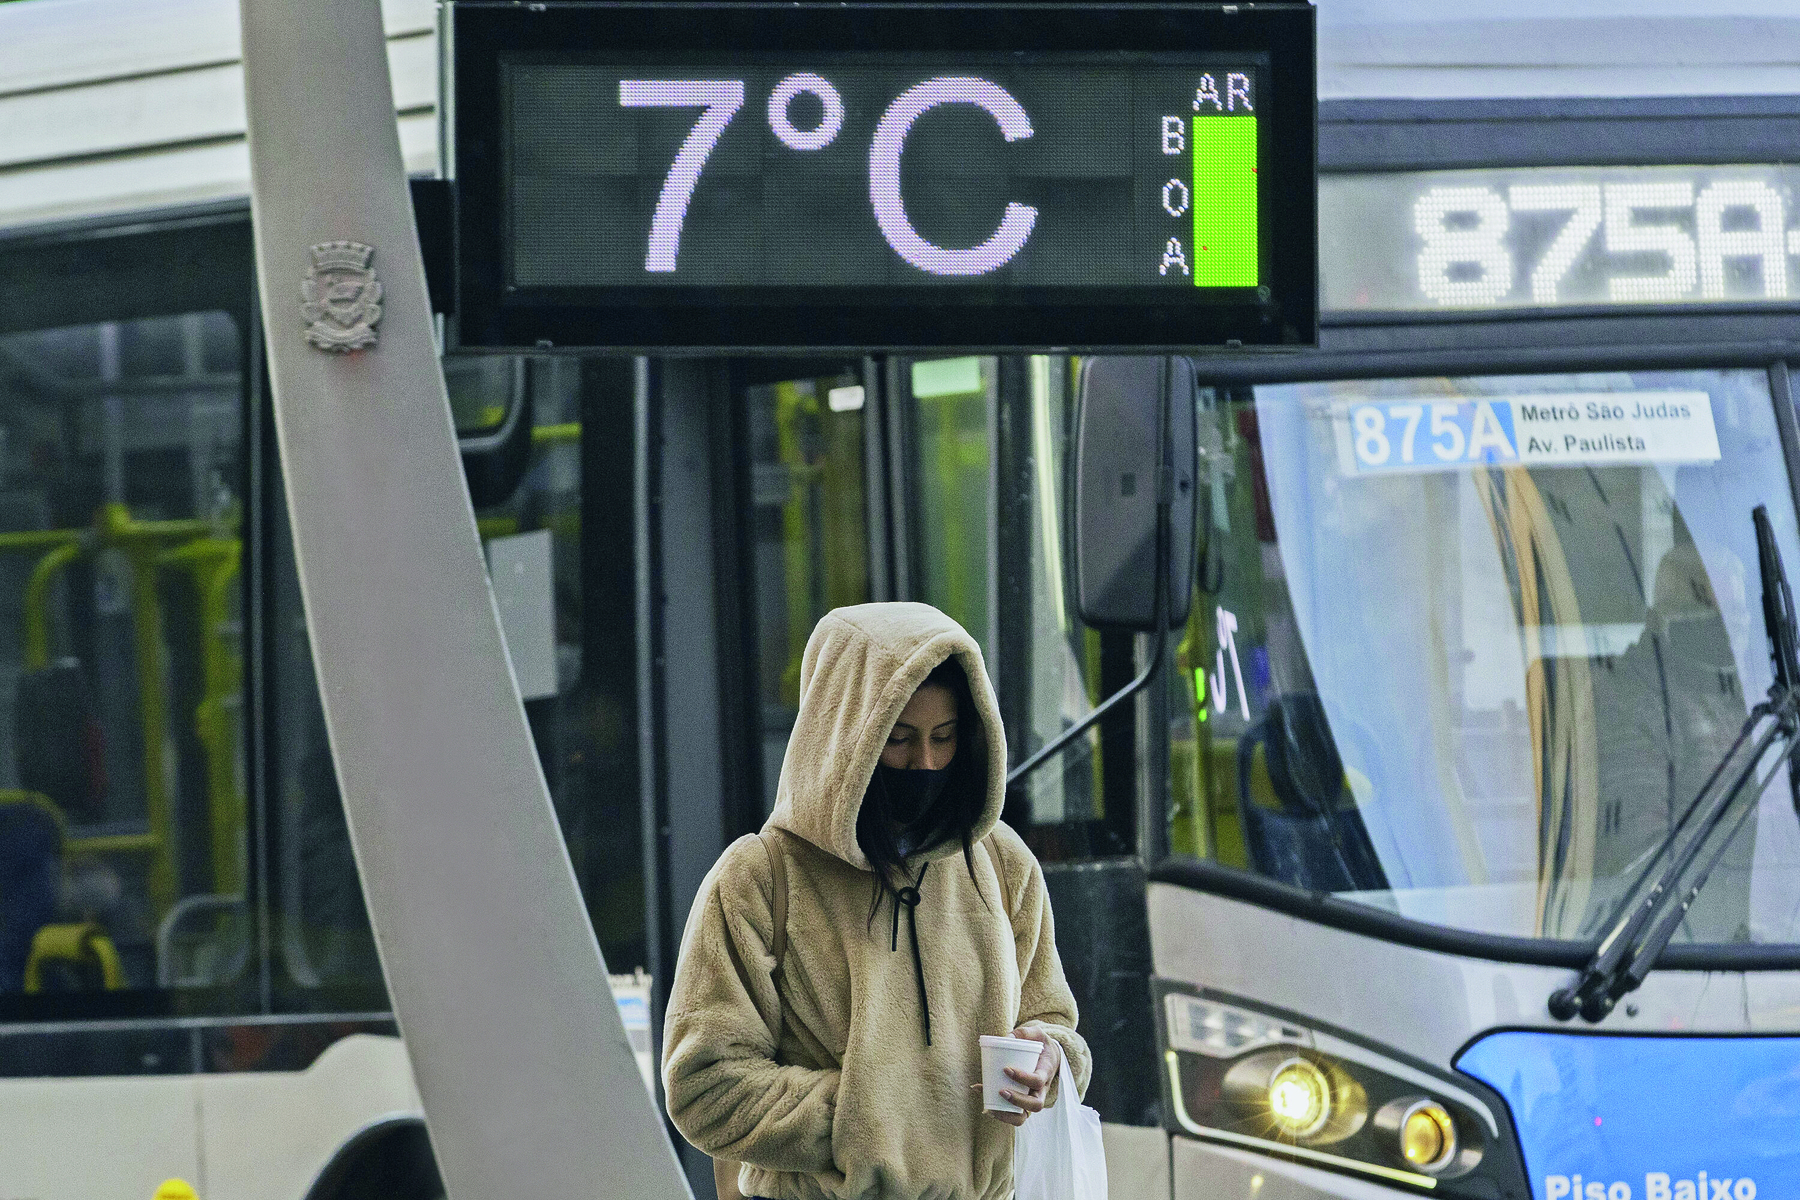 Fotografia. Uma pessoa caminhando na rua, vestida de blusa de frio bege, cachecol preto, com um copo de isopor e uma sacola nas mãos. Acima dela termômetro marcando 7 graus Celsius e umidade do ar, boa. Ao fundo, um ônibus circular. O dia está nublado.